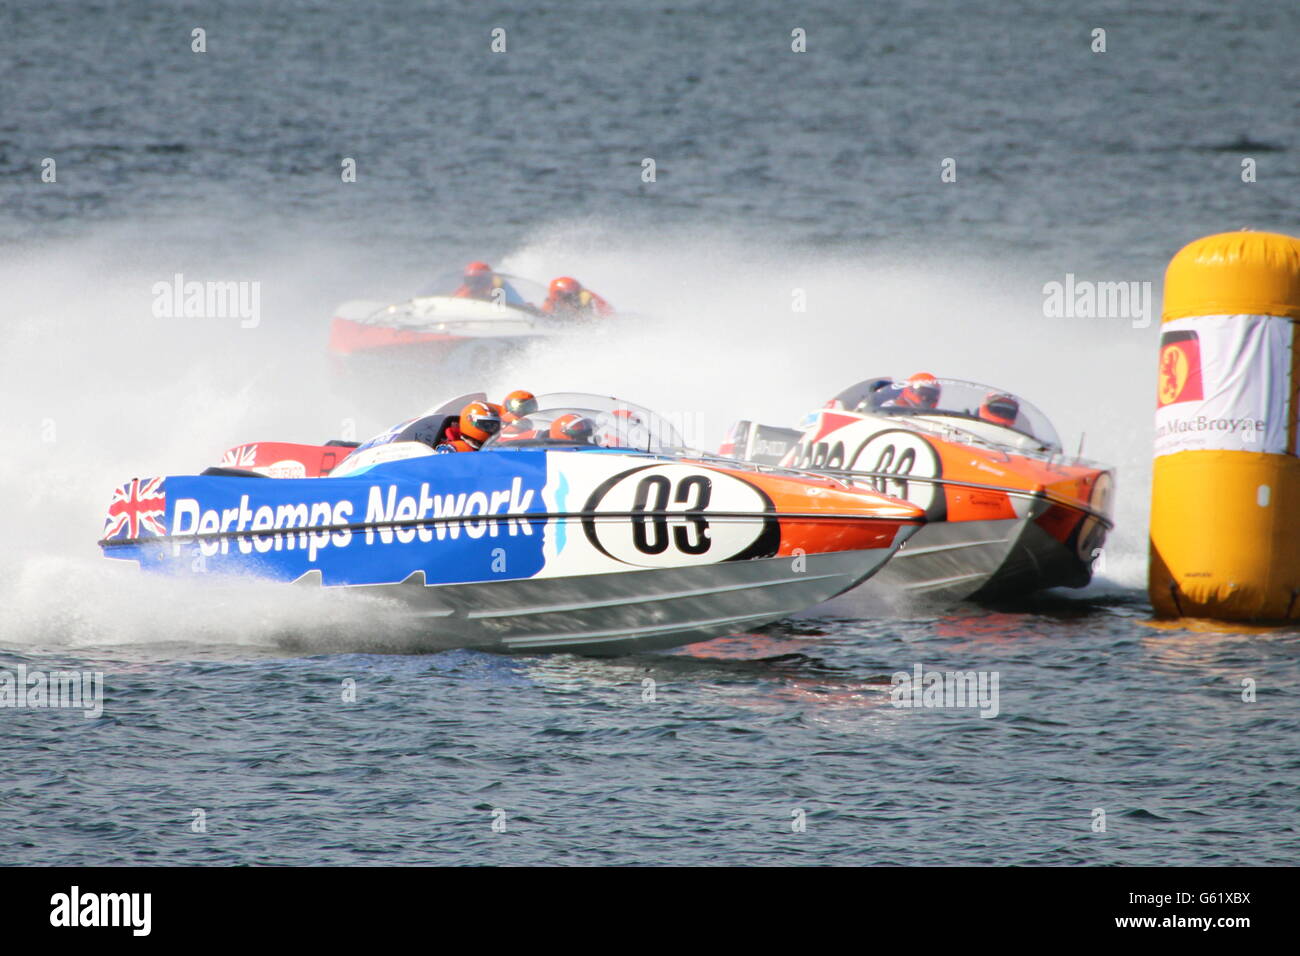 La rete Pertemps Team durante la cerimonia inaugurale Scottish Grand Prix del mare, tenutasi a Greenock sul Firth of Clyde. Foto Stock